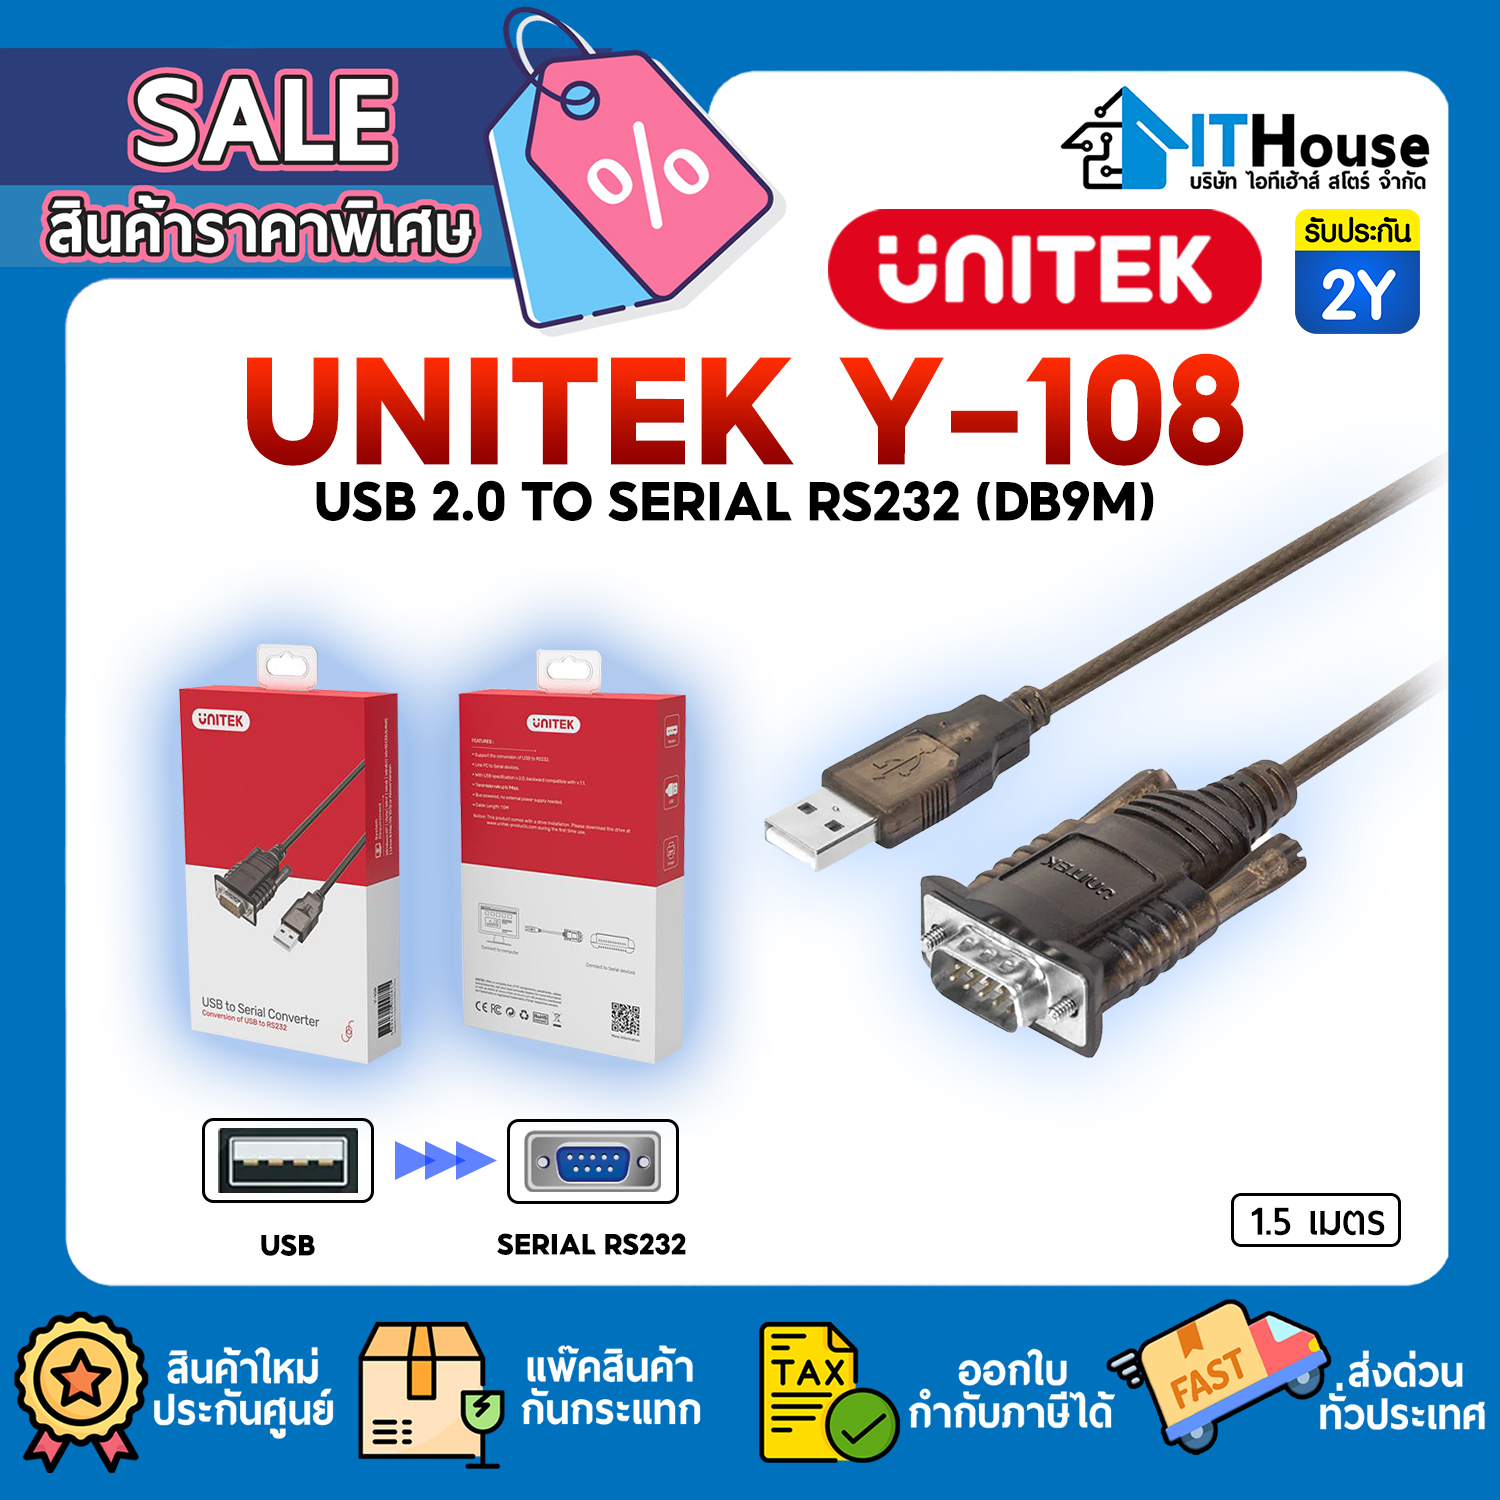 UNITEK Y-108 USB 2.0 TO SERIAL RS232 (DB9M) 1.5M